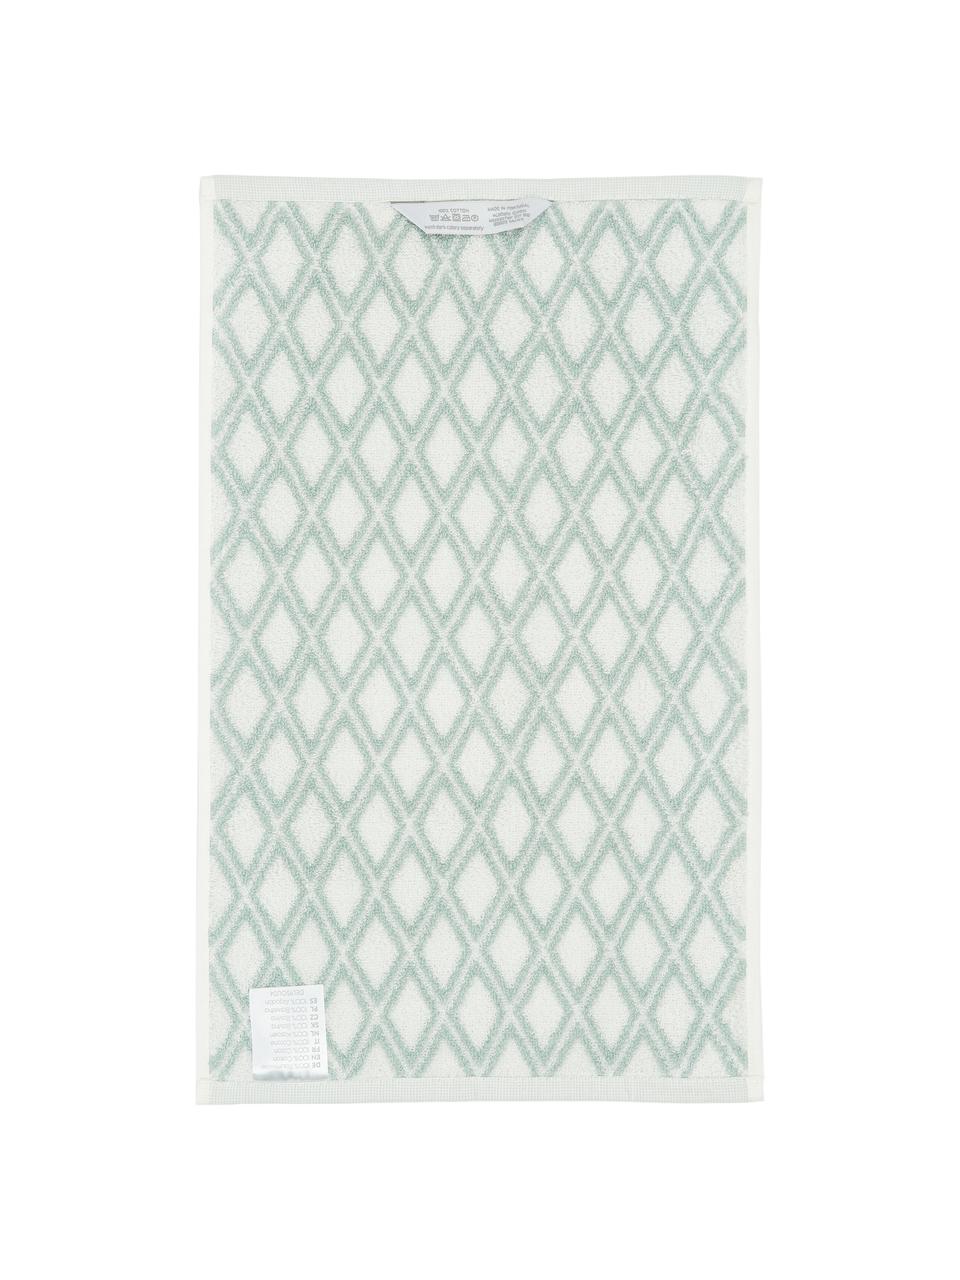 Asciugamano reversibile con motivo grafico Ava, Verde menta, bianco crema, Asciugamano, Larg. 50 x Lung. 100 cm, 2 pz.